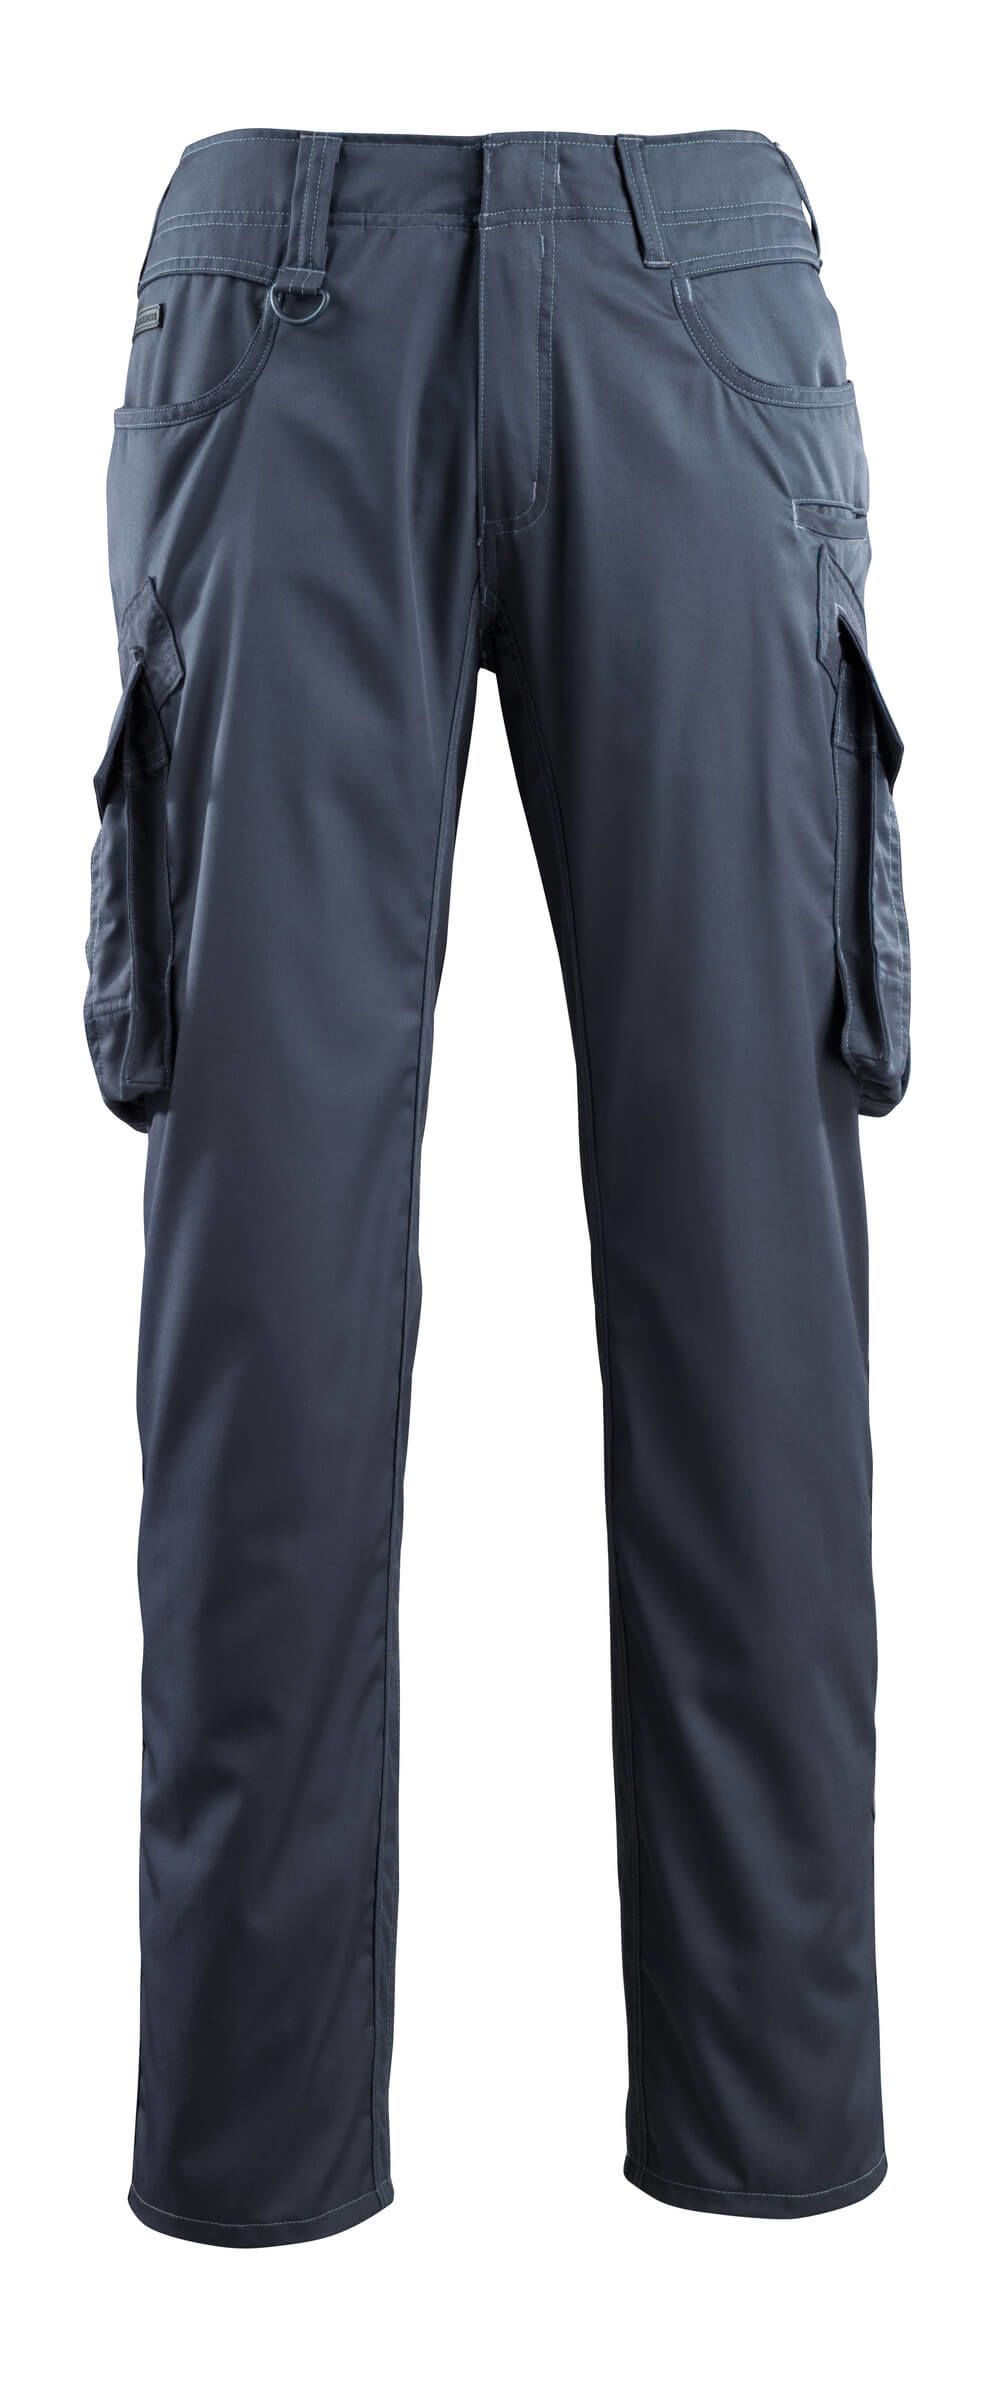 Mascot Workwear INGOLSTADT Dark Navy Unisex's Cotton, Polyester Trousers 39in, 48 Waist